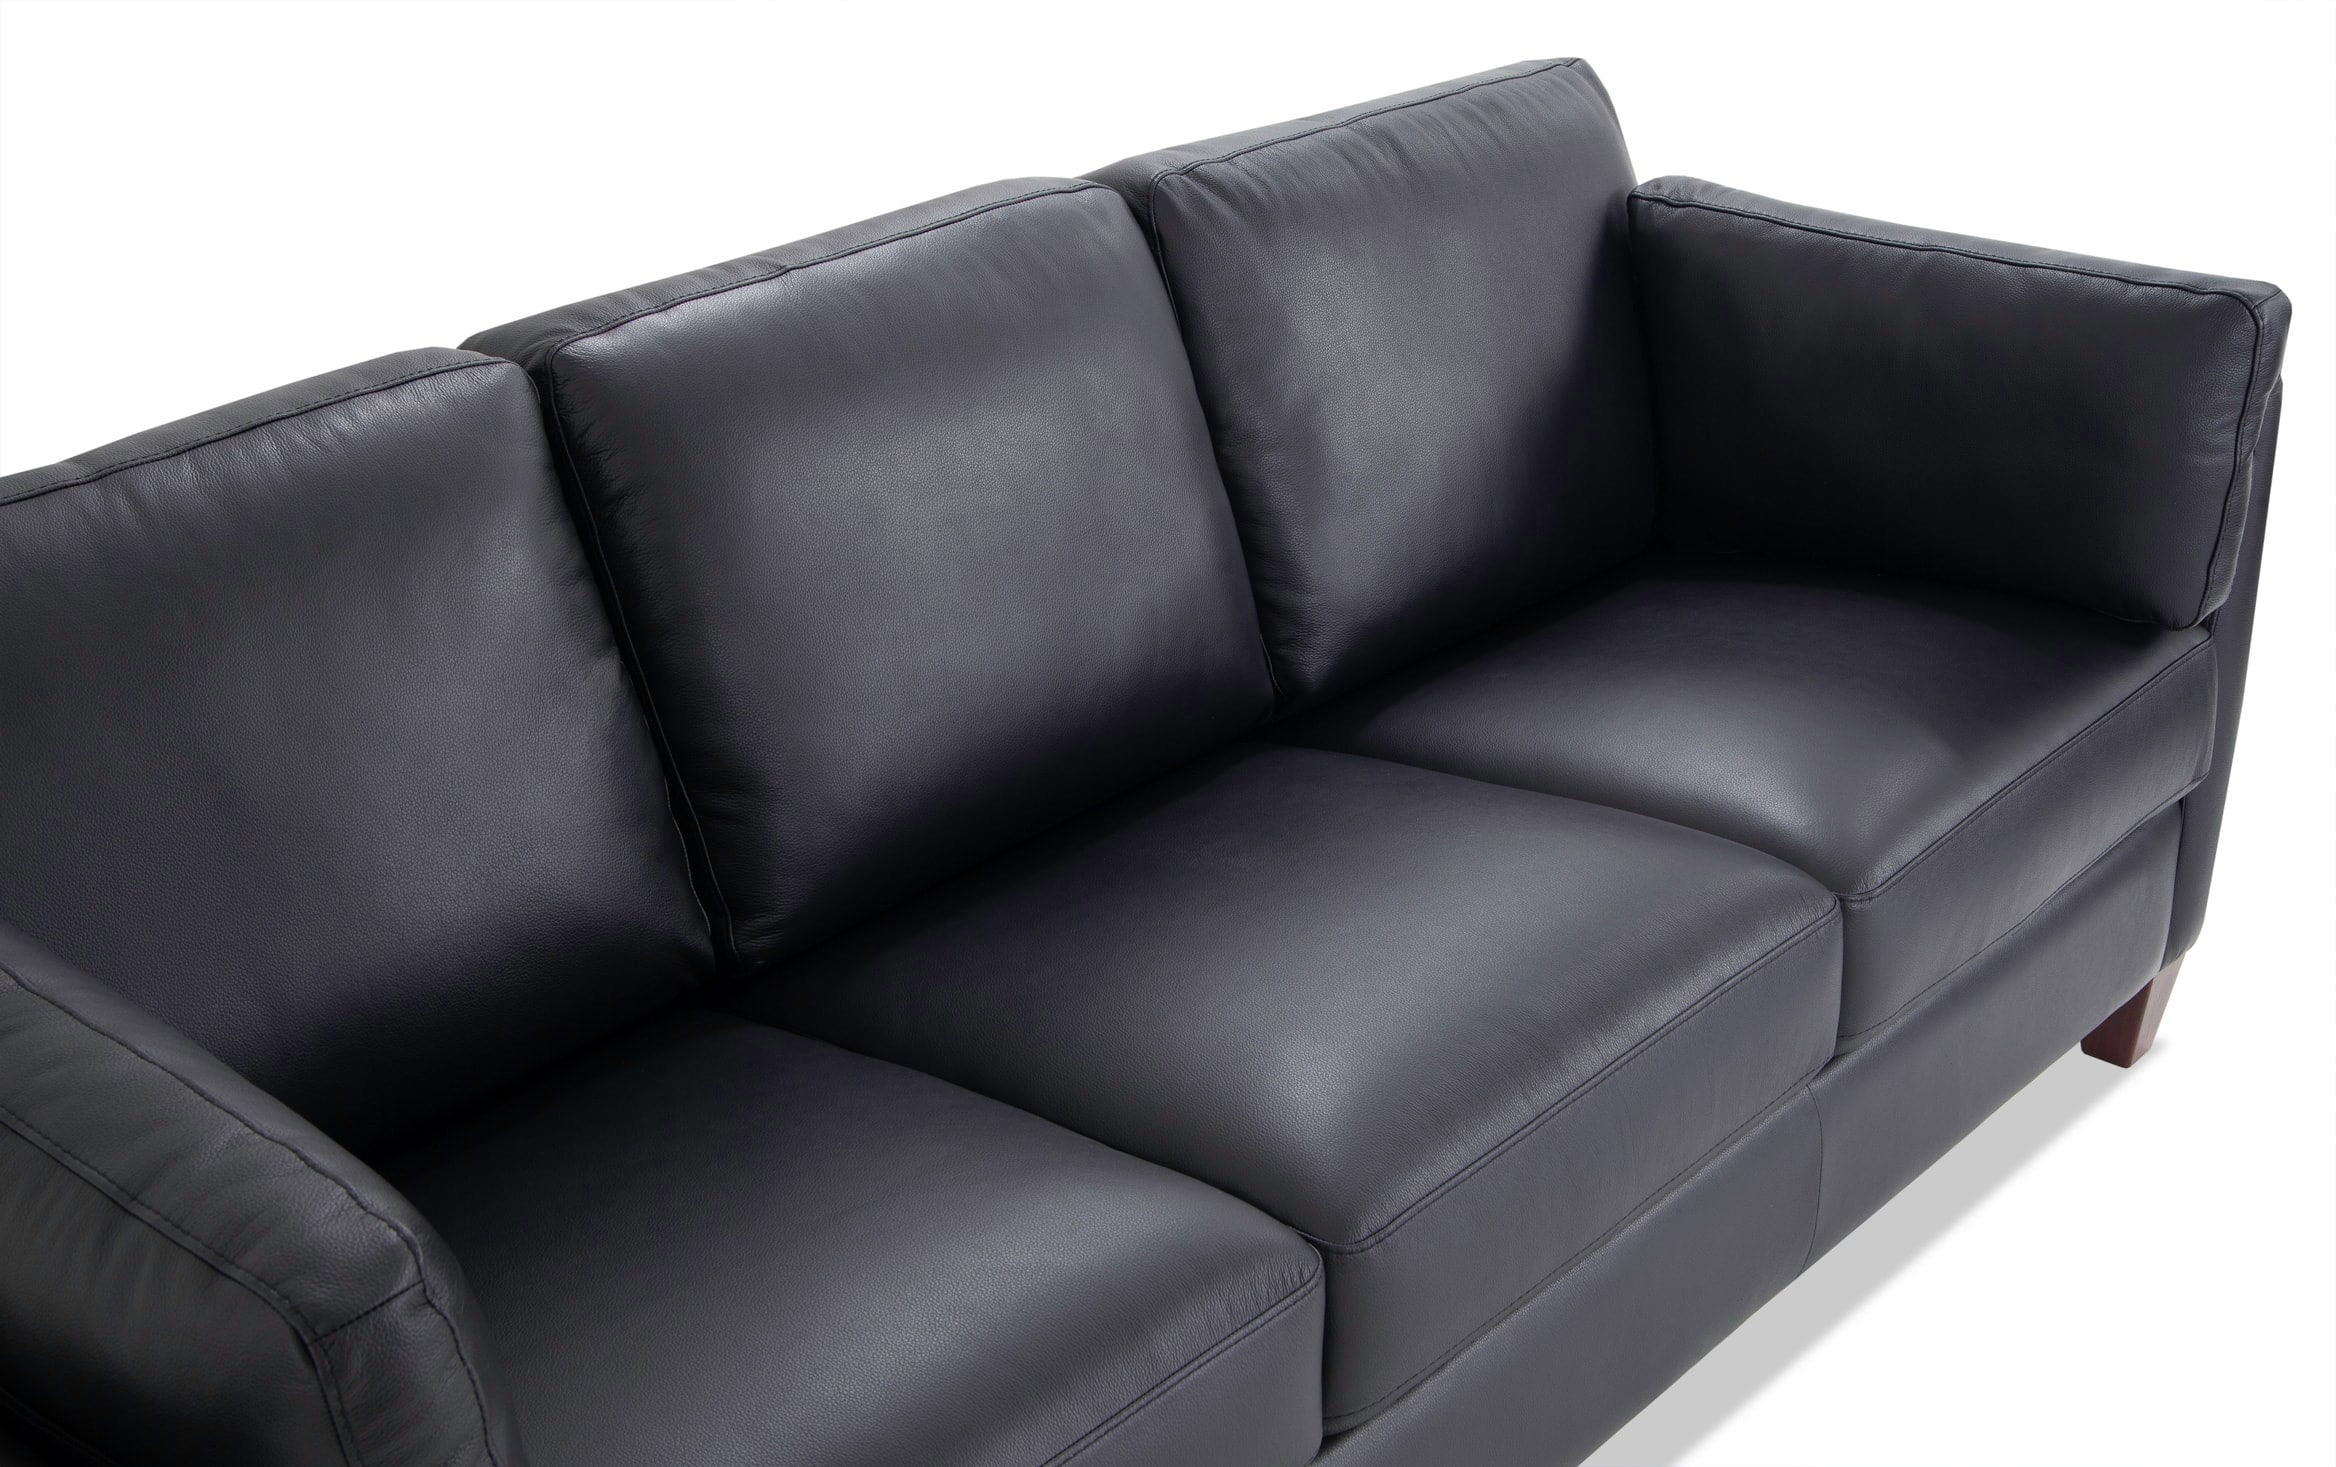 Bob O Pedic Gel Queen Sleeper Sofa, Black Leather Sleeper Sofa Queen